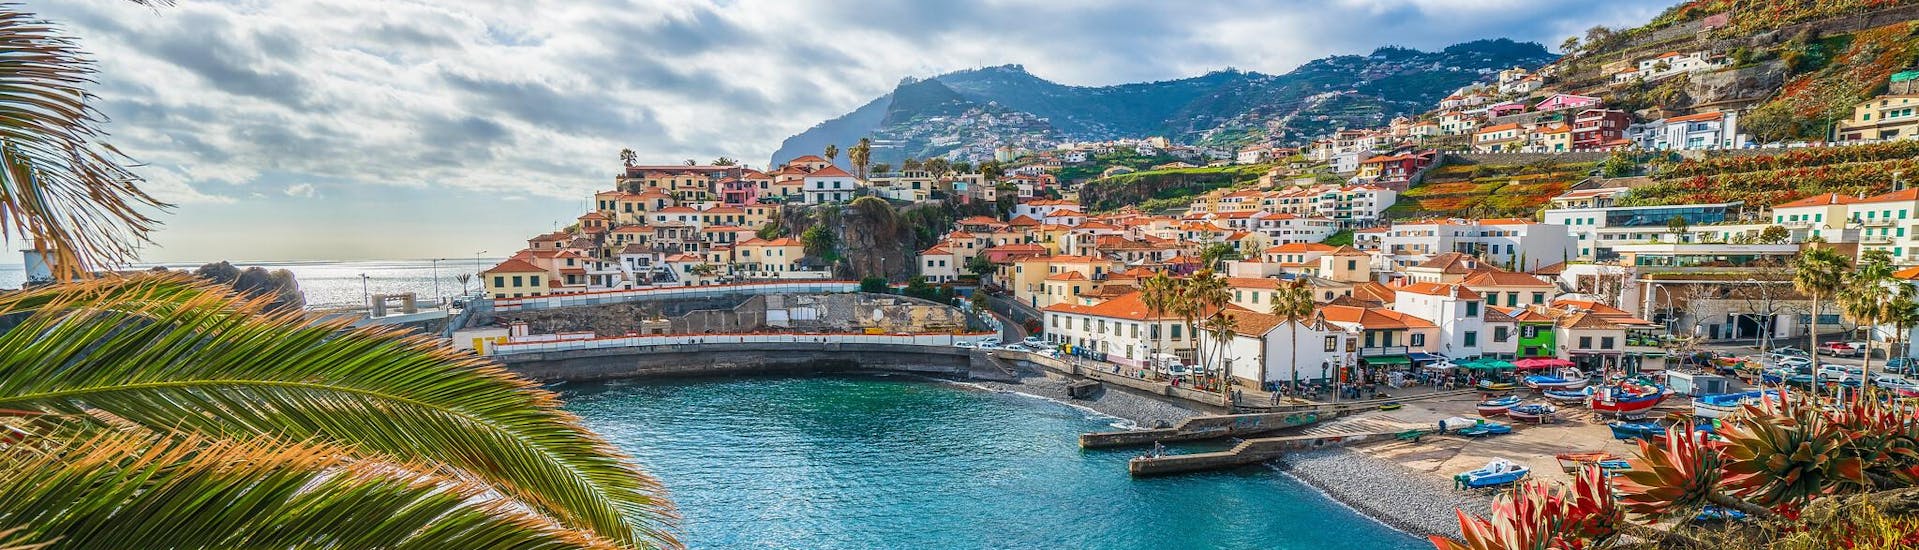 Beeld van de kust en de kleurrijke huizen in het dorp Funchal